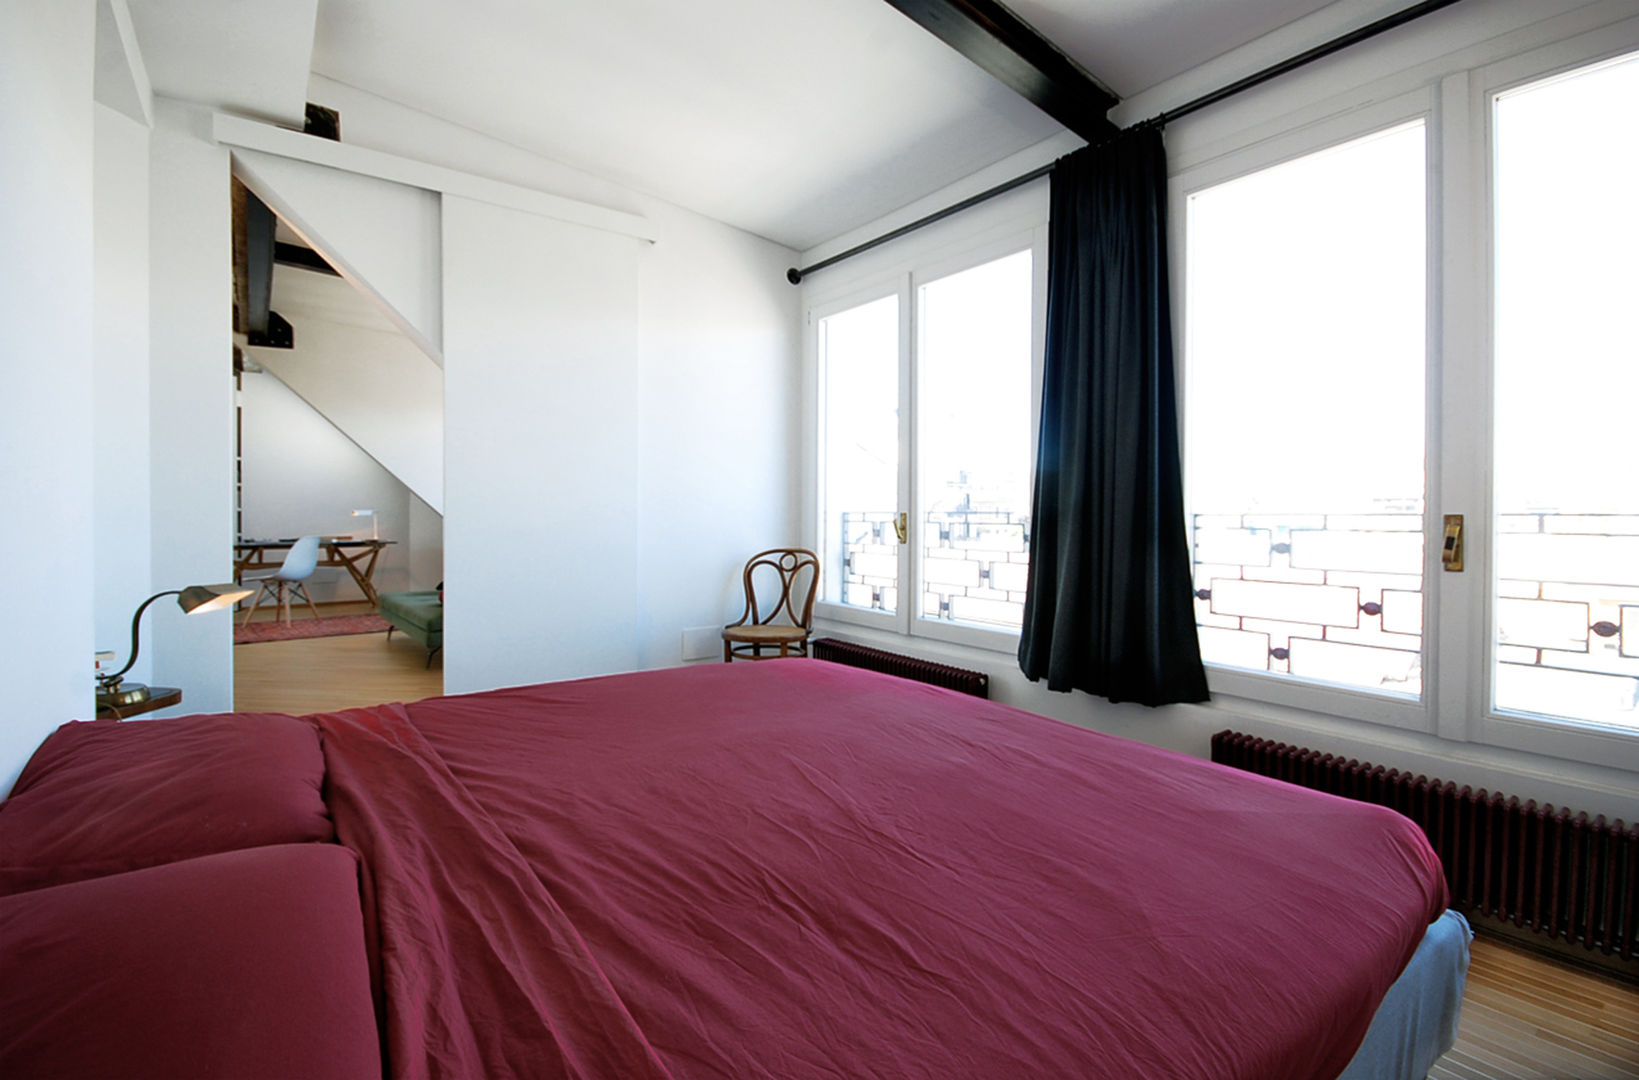 Visconti di Modrone, andrea borri architetti andrea borri architetti Modern style bedroom